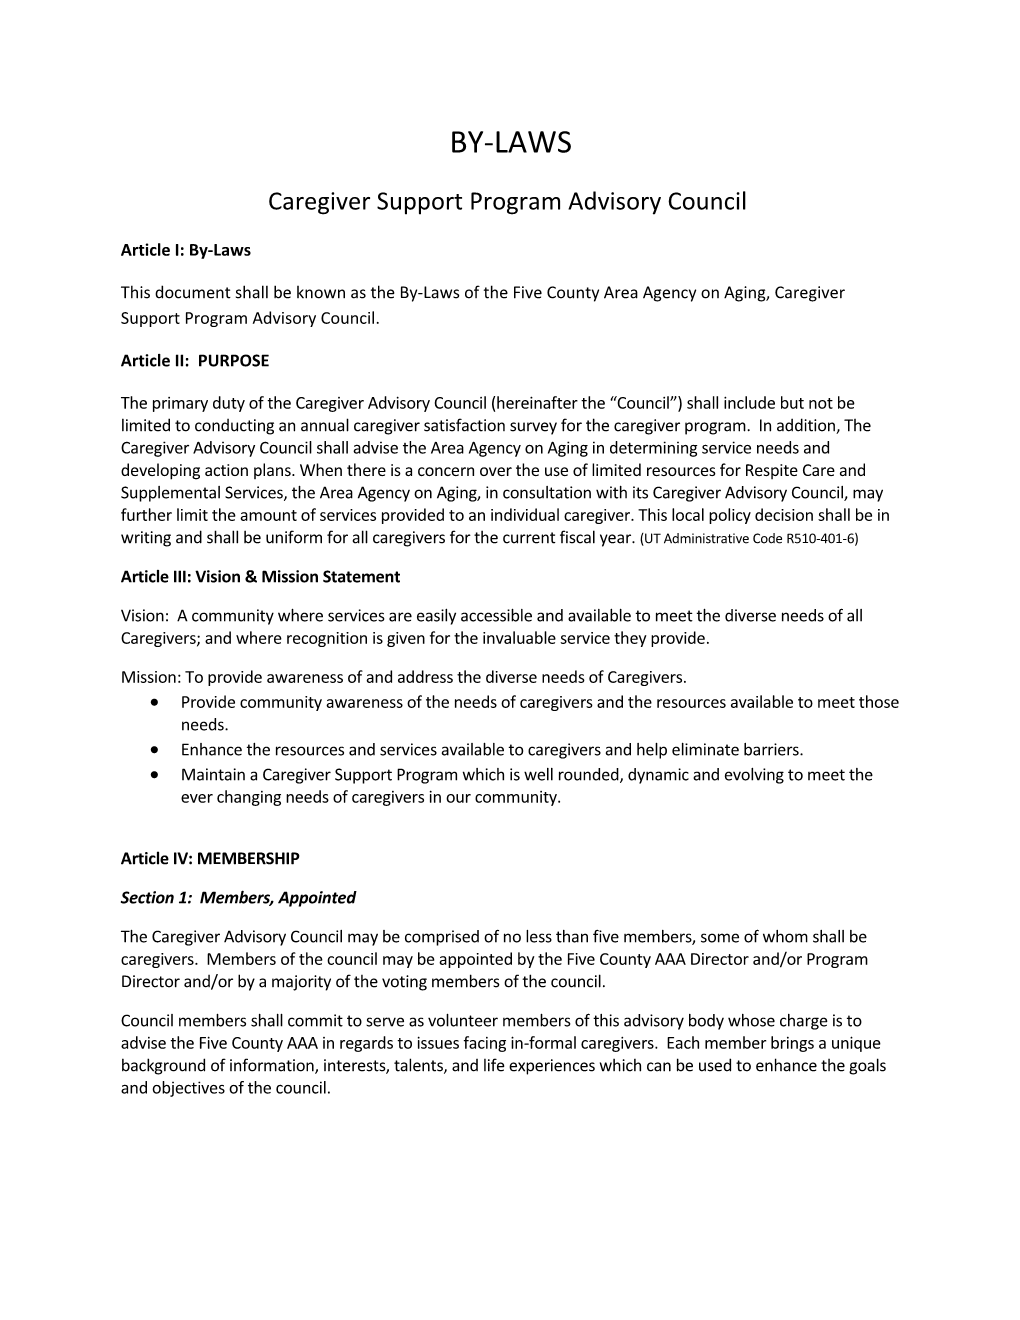 Caregiver Support Program Advisory Council